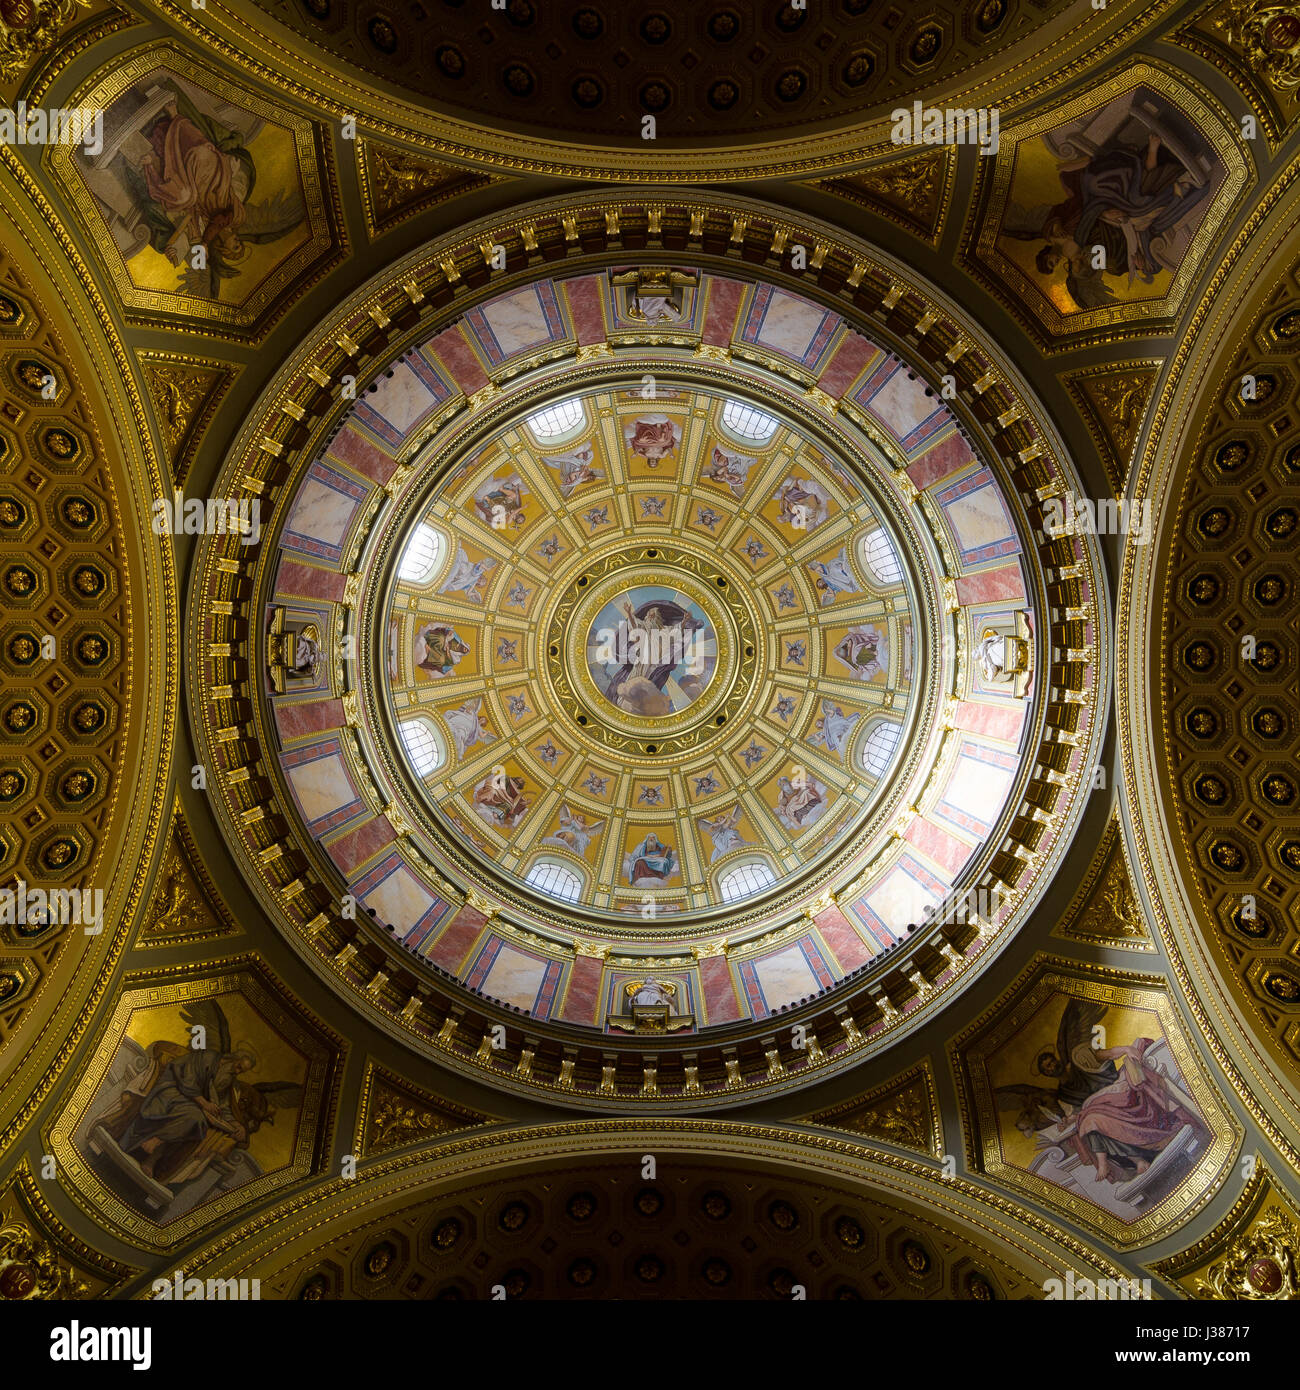 BUDAPEST, Ungarn - 22. Februar 2016: Innere der Kuppel. Römisch-katholische Kirche St.-Stephans Basilika. Reich verzierte Decke mit Wandmalerei und g Stockfoto